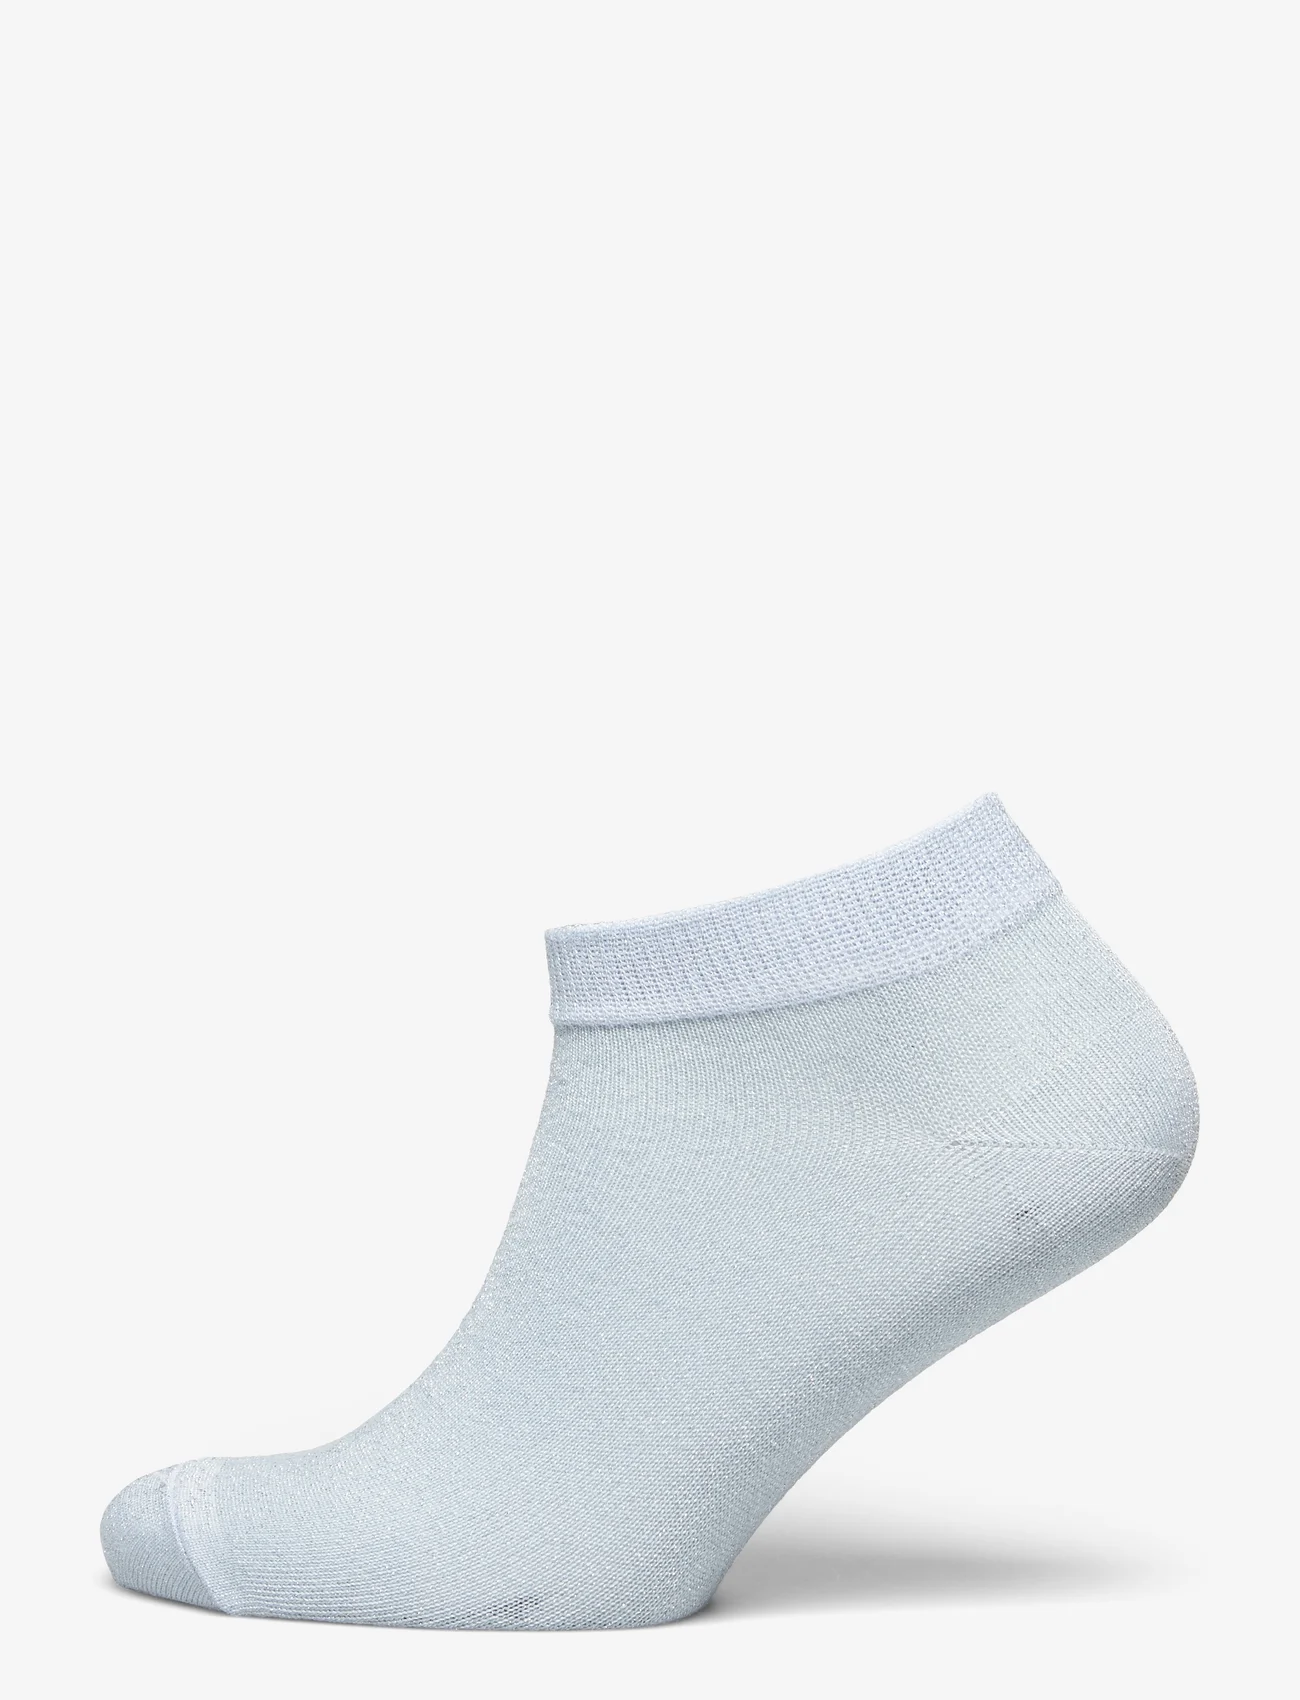 mp Denmark - Zoe sneaker socks - laagste prijzen - winter sky - 0